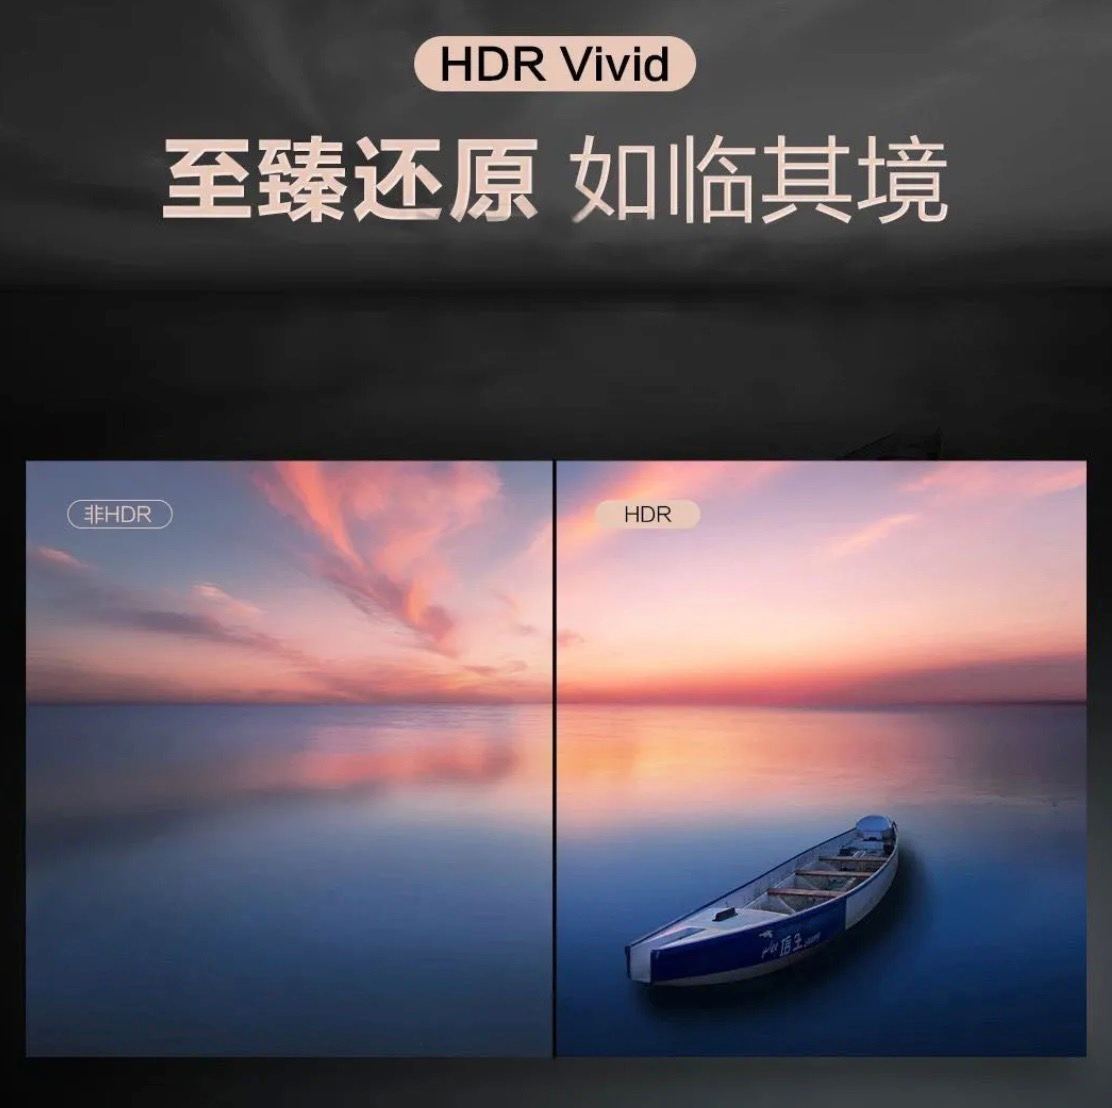 TVs Smart Screen da Série V da Huawei são os primeiros produtos com certificado HDR Vivid 1